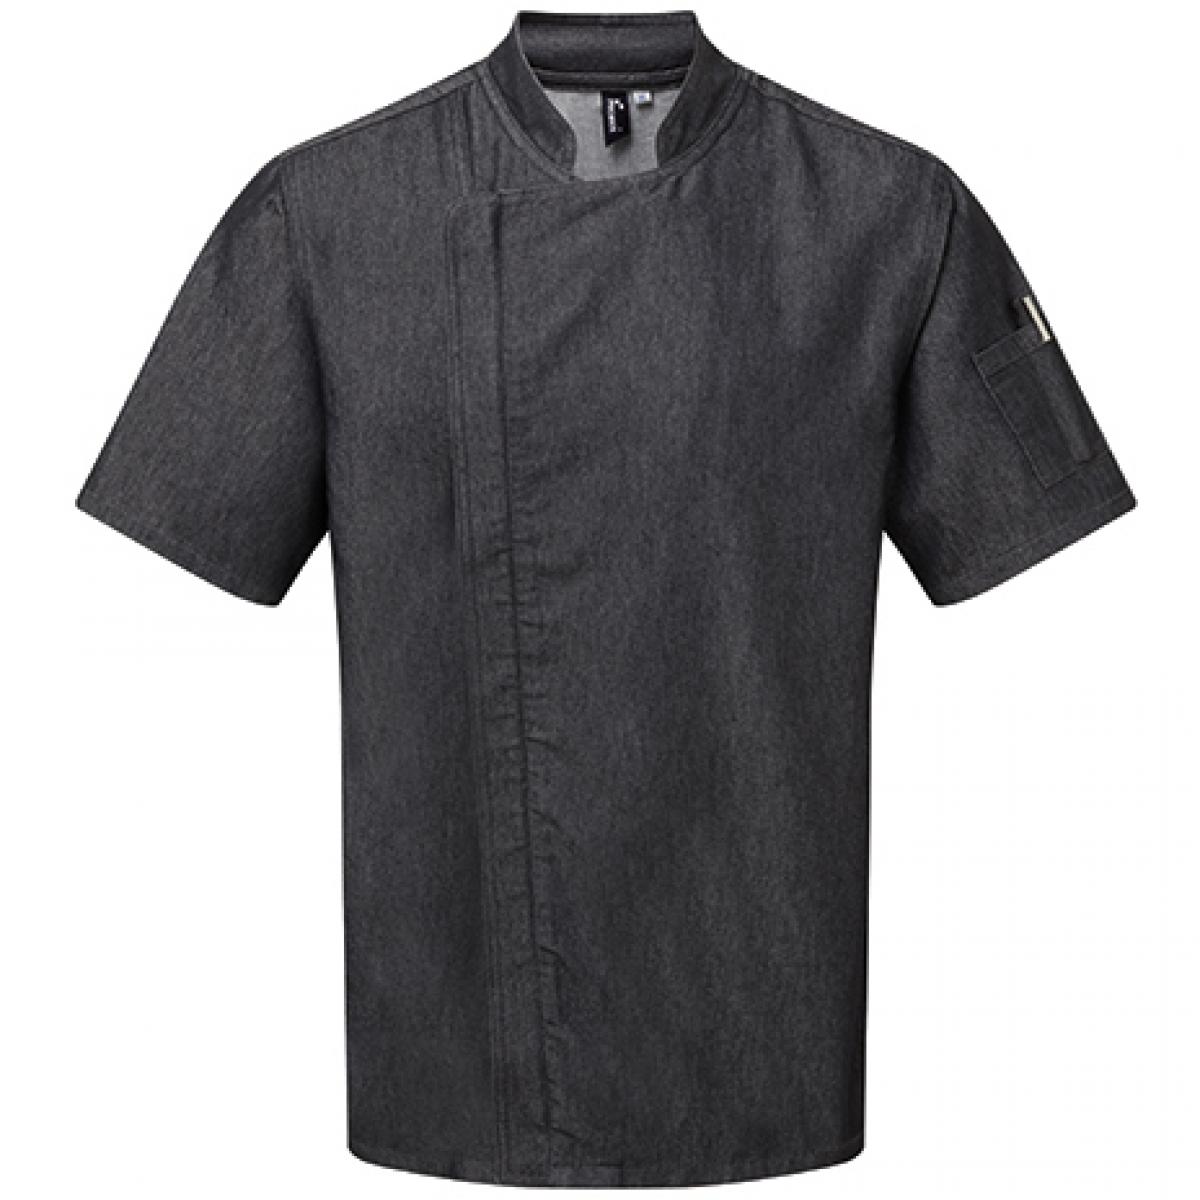 Hersteller: Premier Workwear Herstellernummer: PR906 Artikelbezeichnung: Kochjacke Chefs Zip-Close Short Sleeve Jacket Farbe: Black Denim (ca. Pantone 426C)